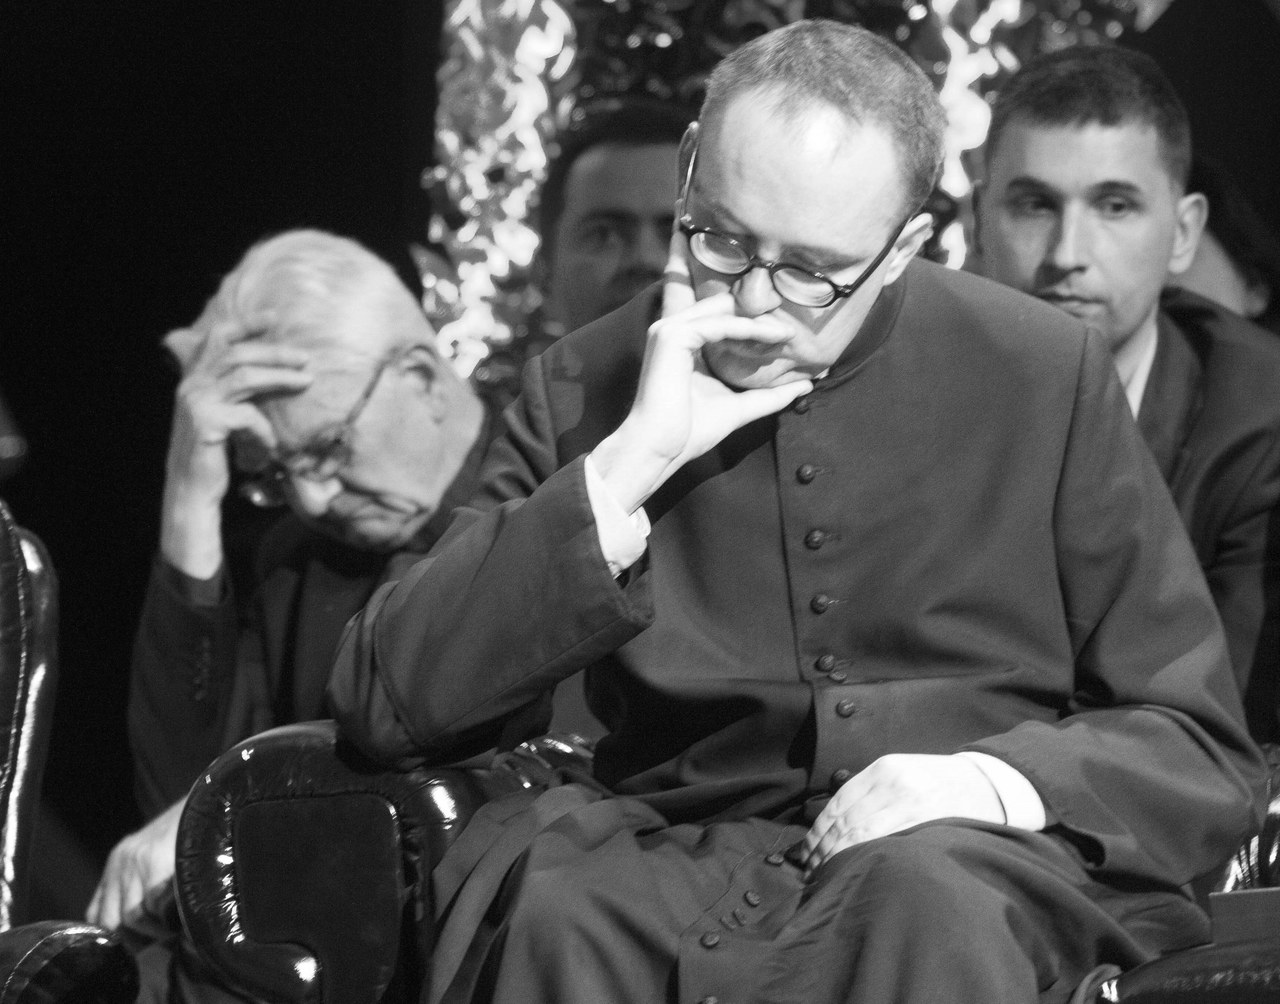 Ksiądz Jan Kaczkowski nie żyje. Duchowny zmarł po długiej chorobie